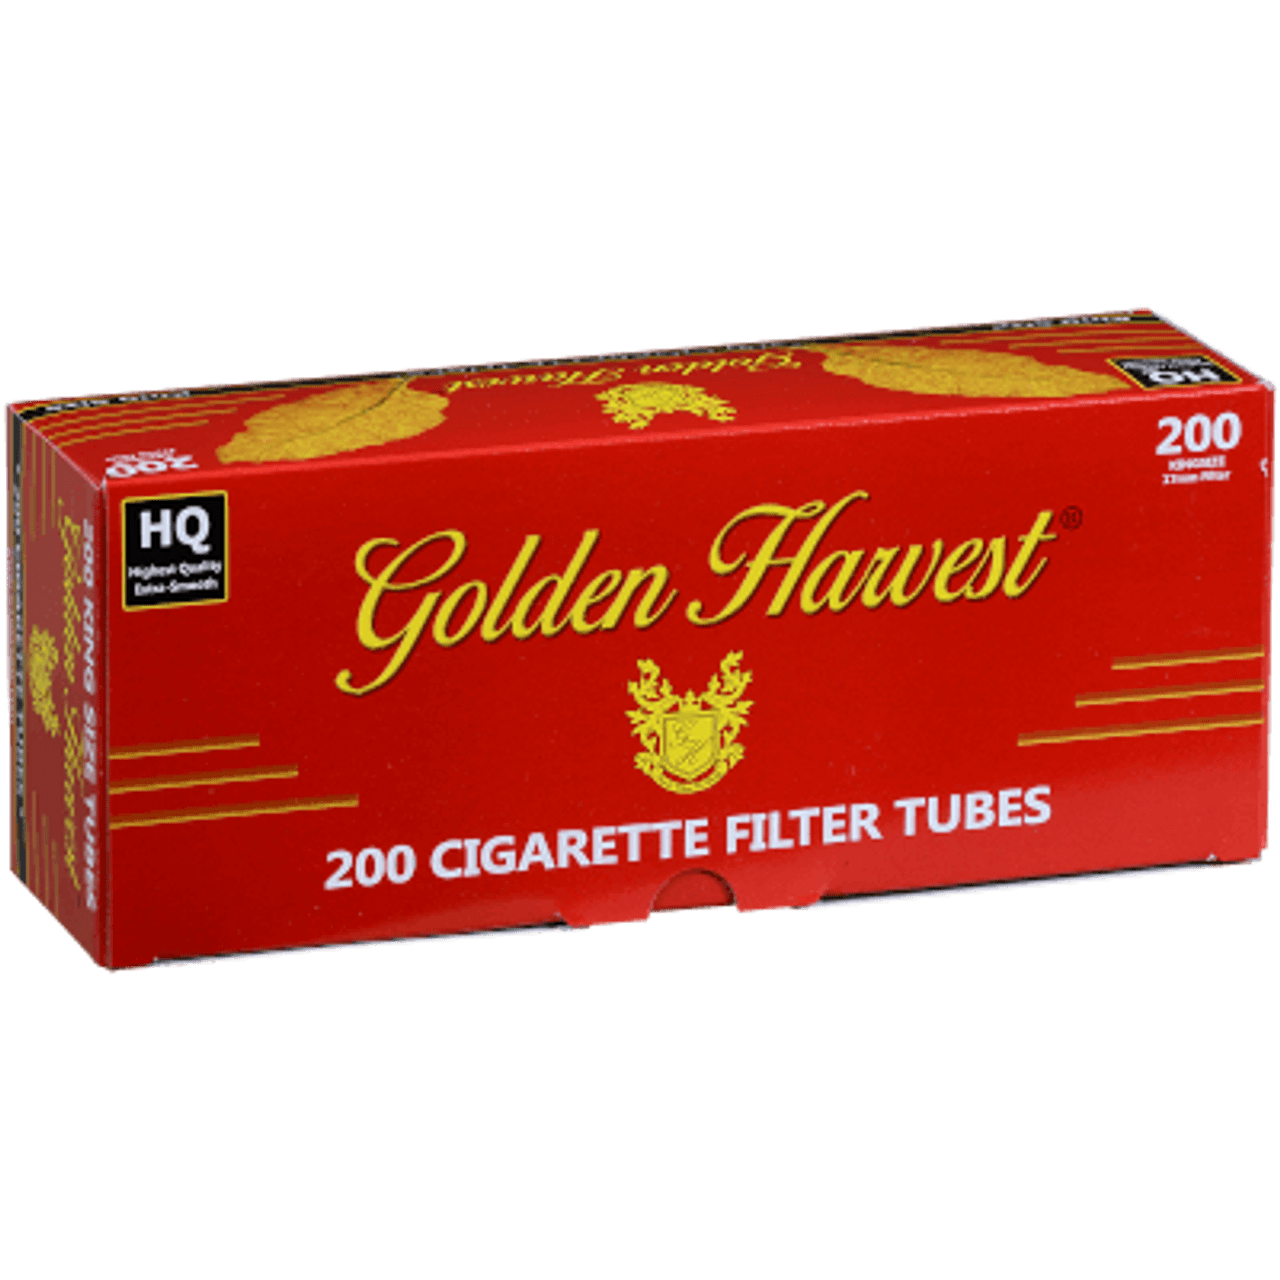  Golden Harvest Cigarette Filter Tubes - Red - King